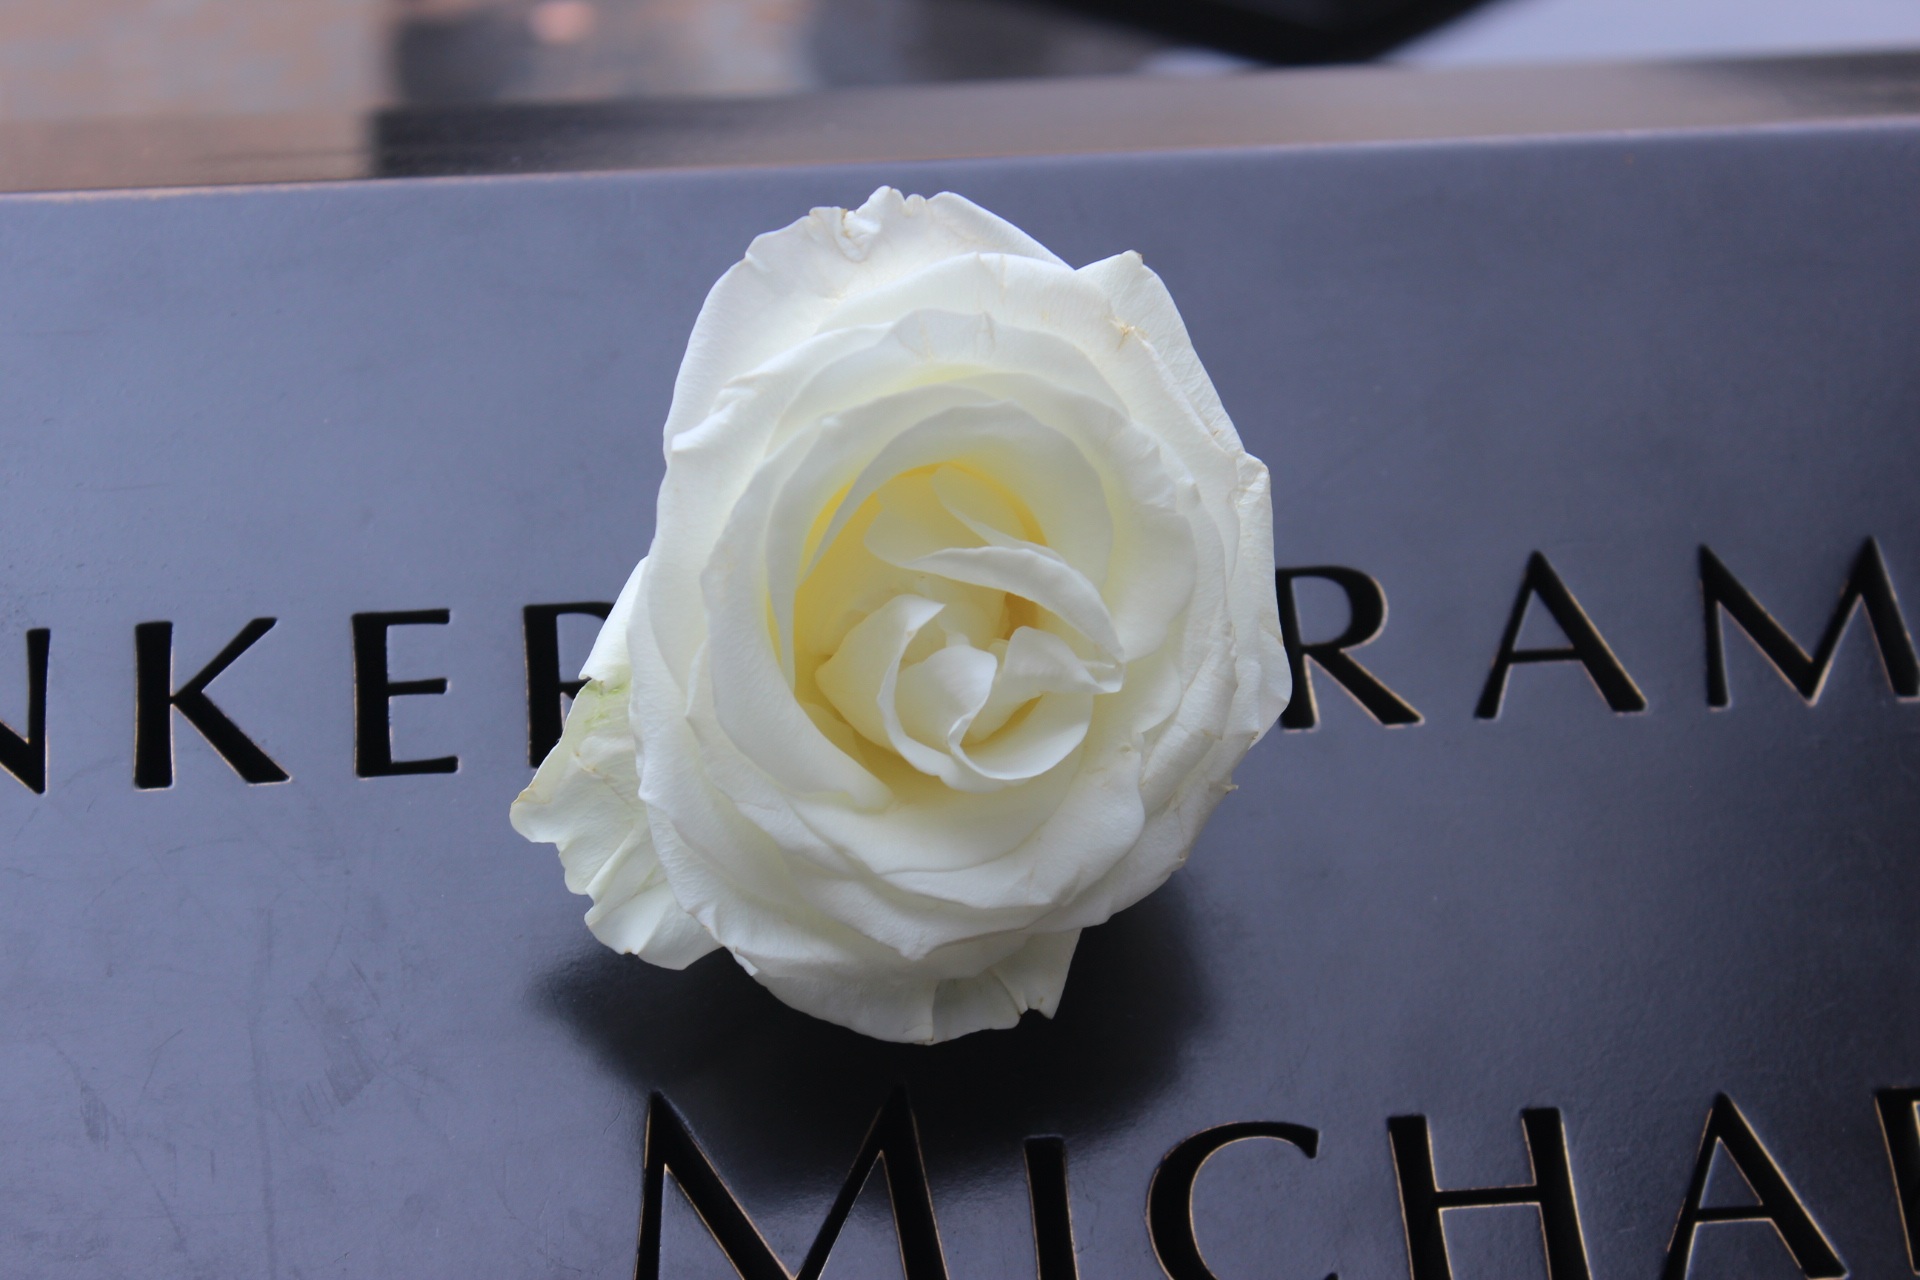 Die Namen der fast 3000 getöteten Menschen werden jedes Jahr am World Trade Center / Ground Zero verlesen. Foto: © Wallula / Pixabay